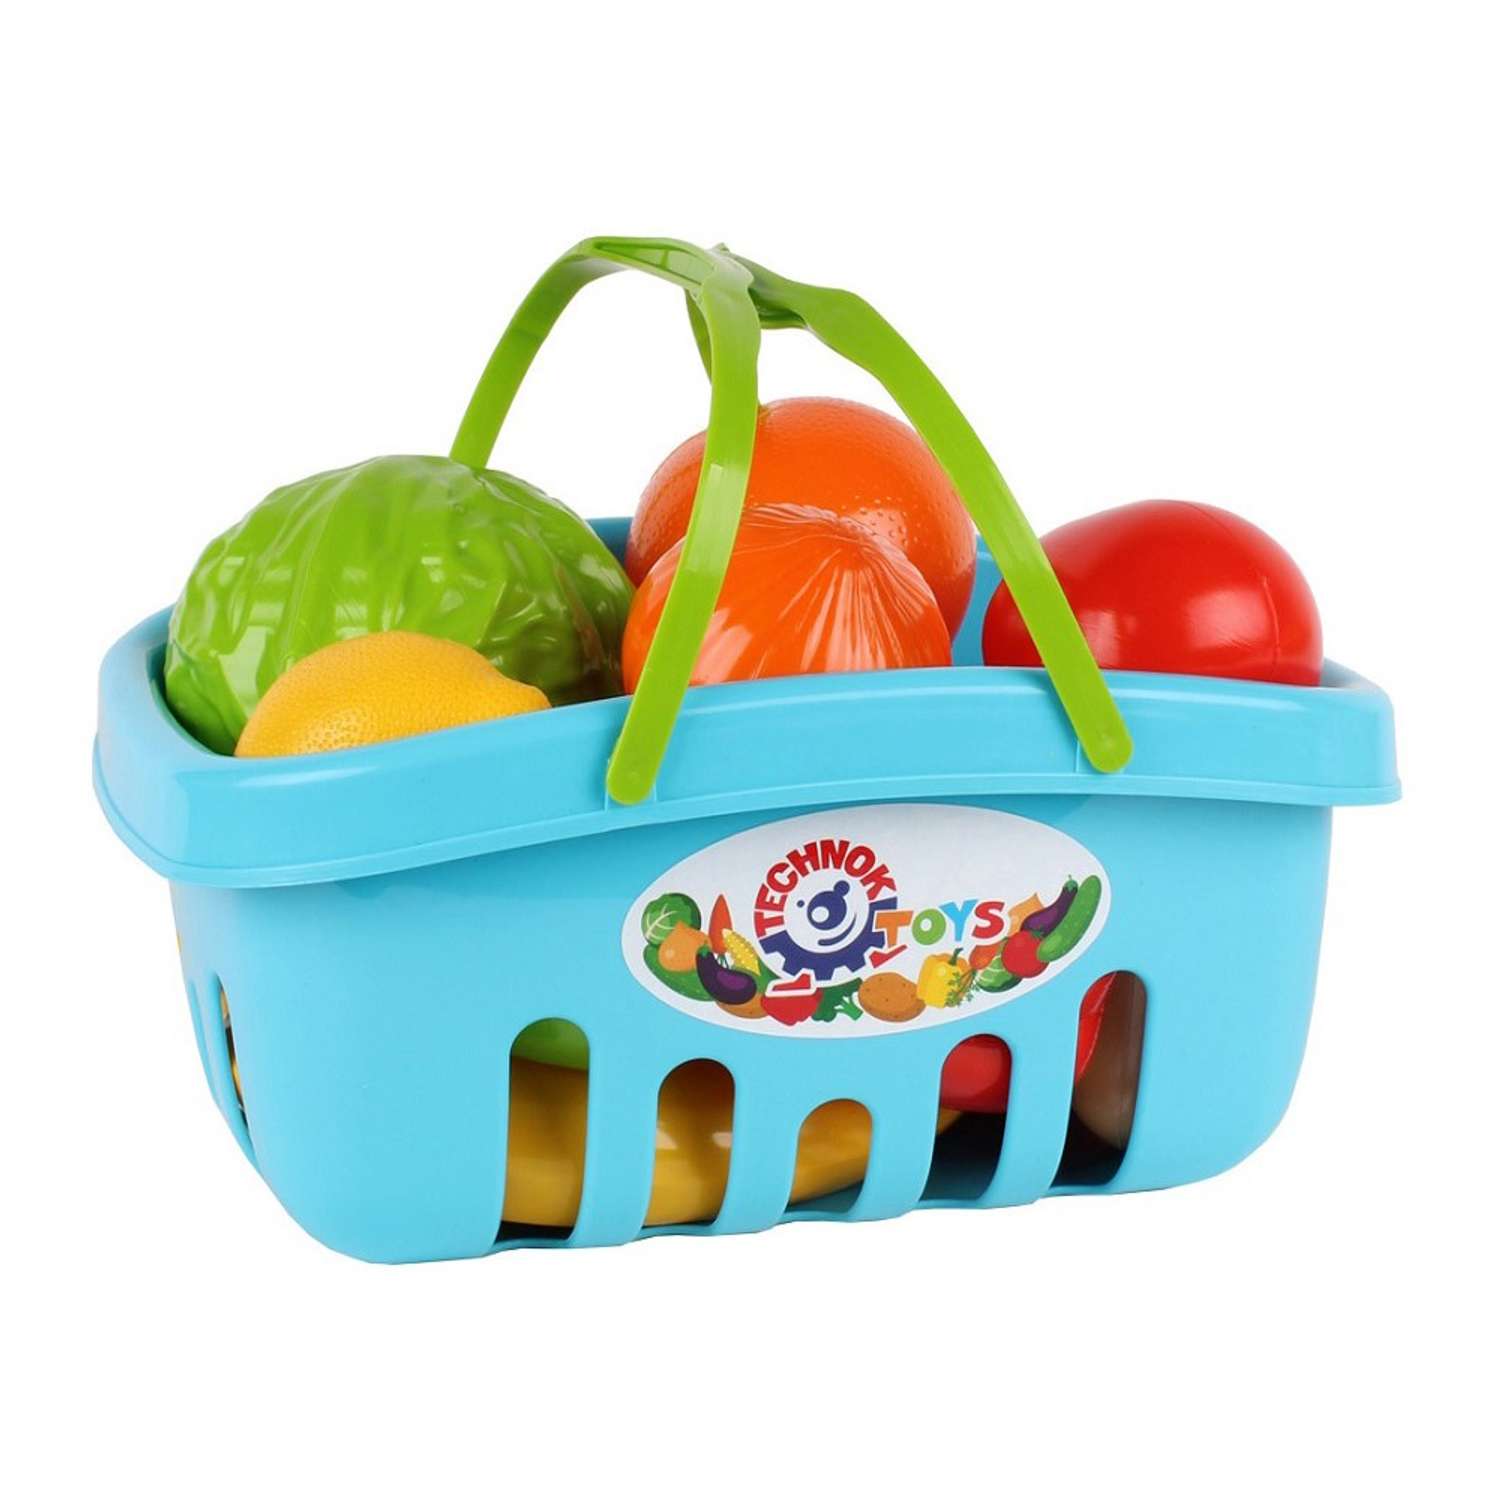 Набор игровой Технок овощи и фрукты в корзинке 17 предметов голубой - фото 1